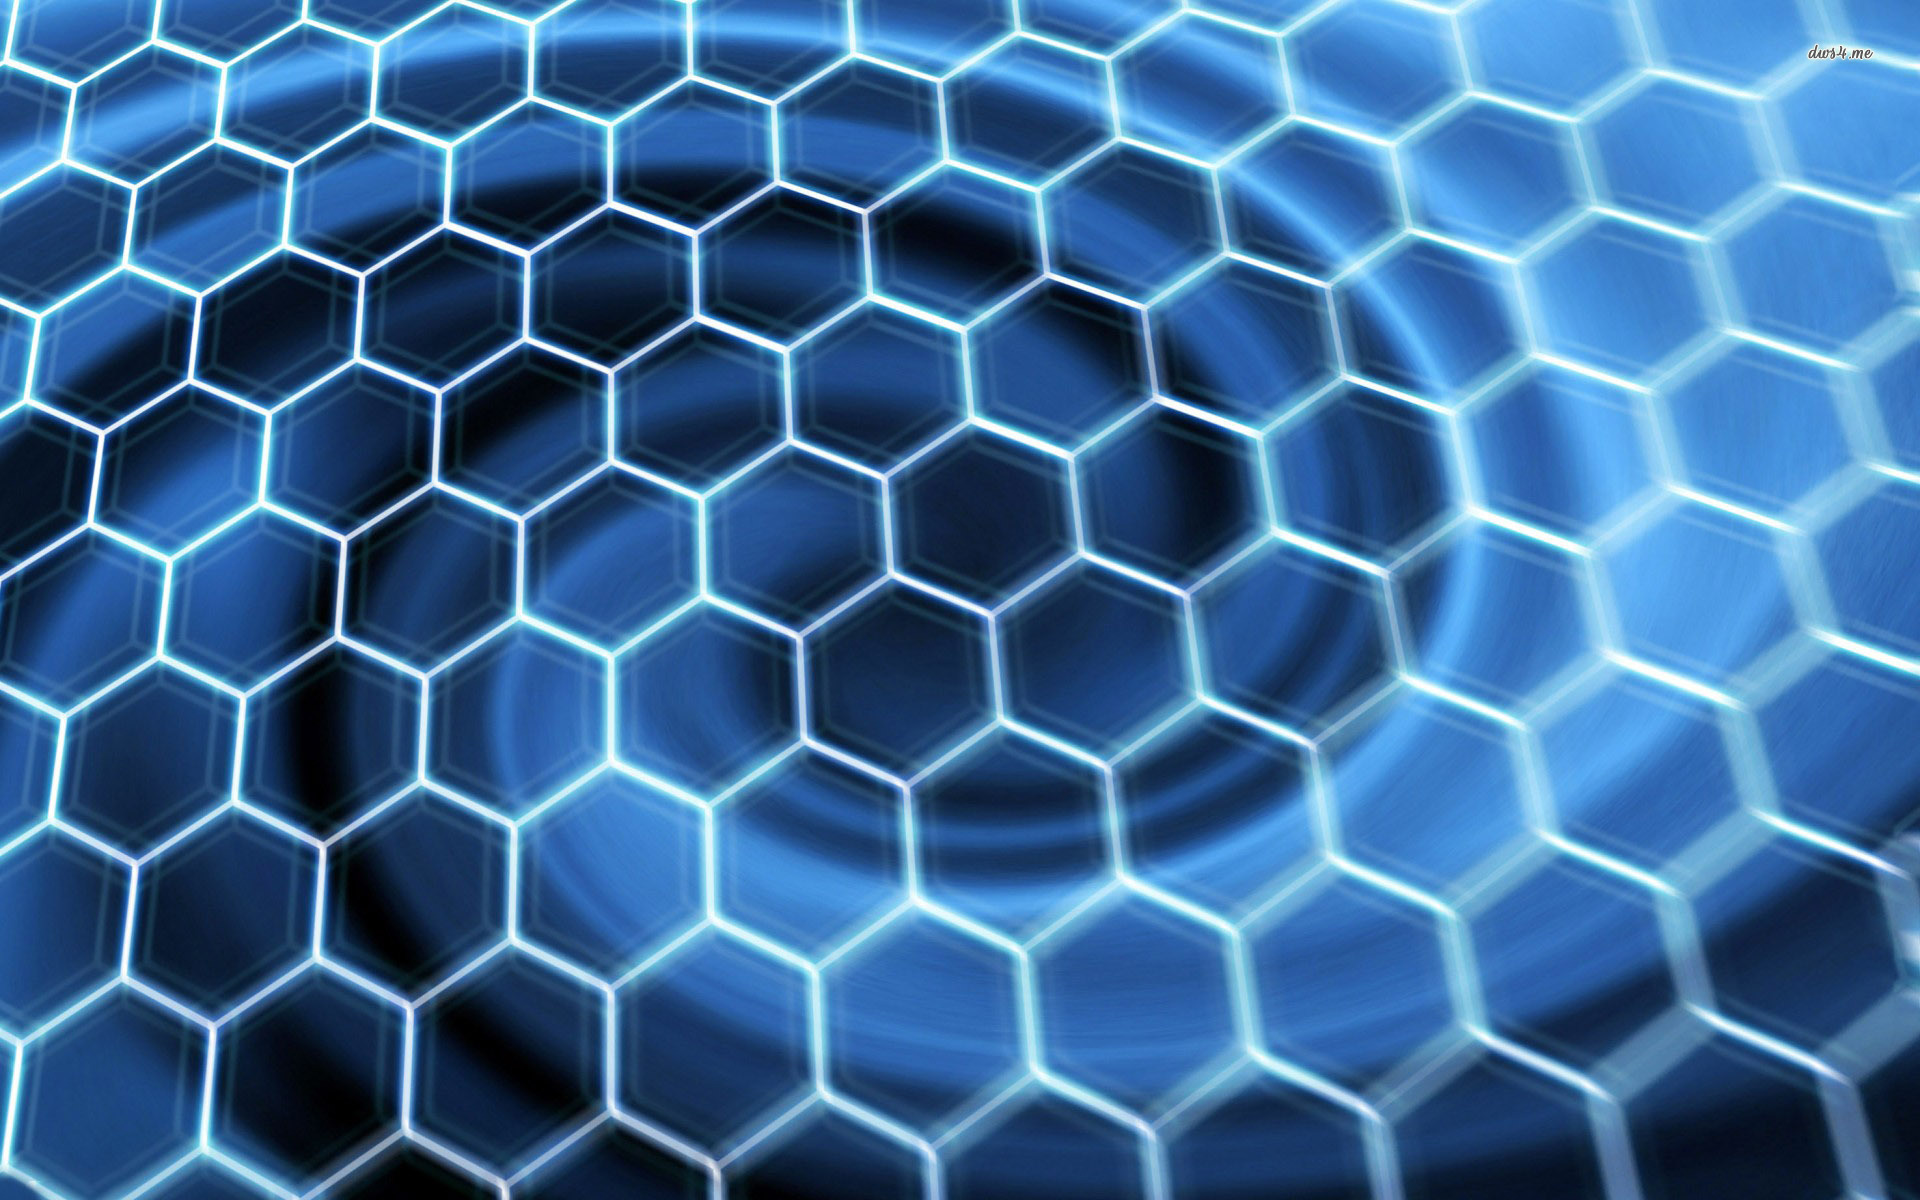 [45+] Microsoft Honeycomb Wallpaper | WallpaperSafari.com